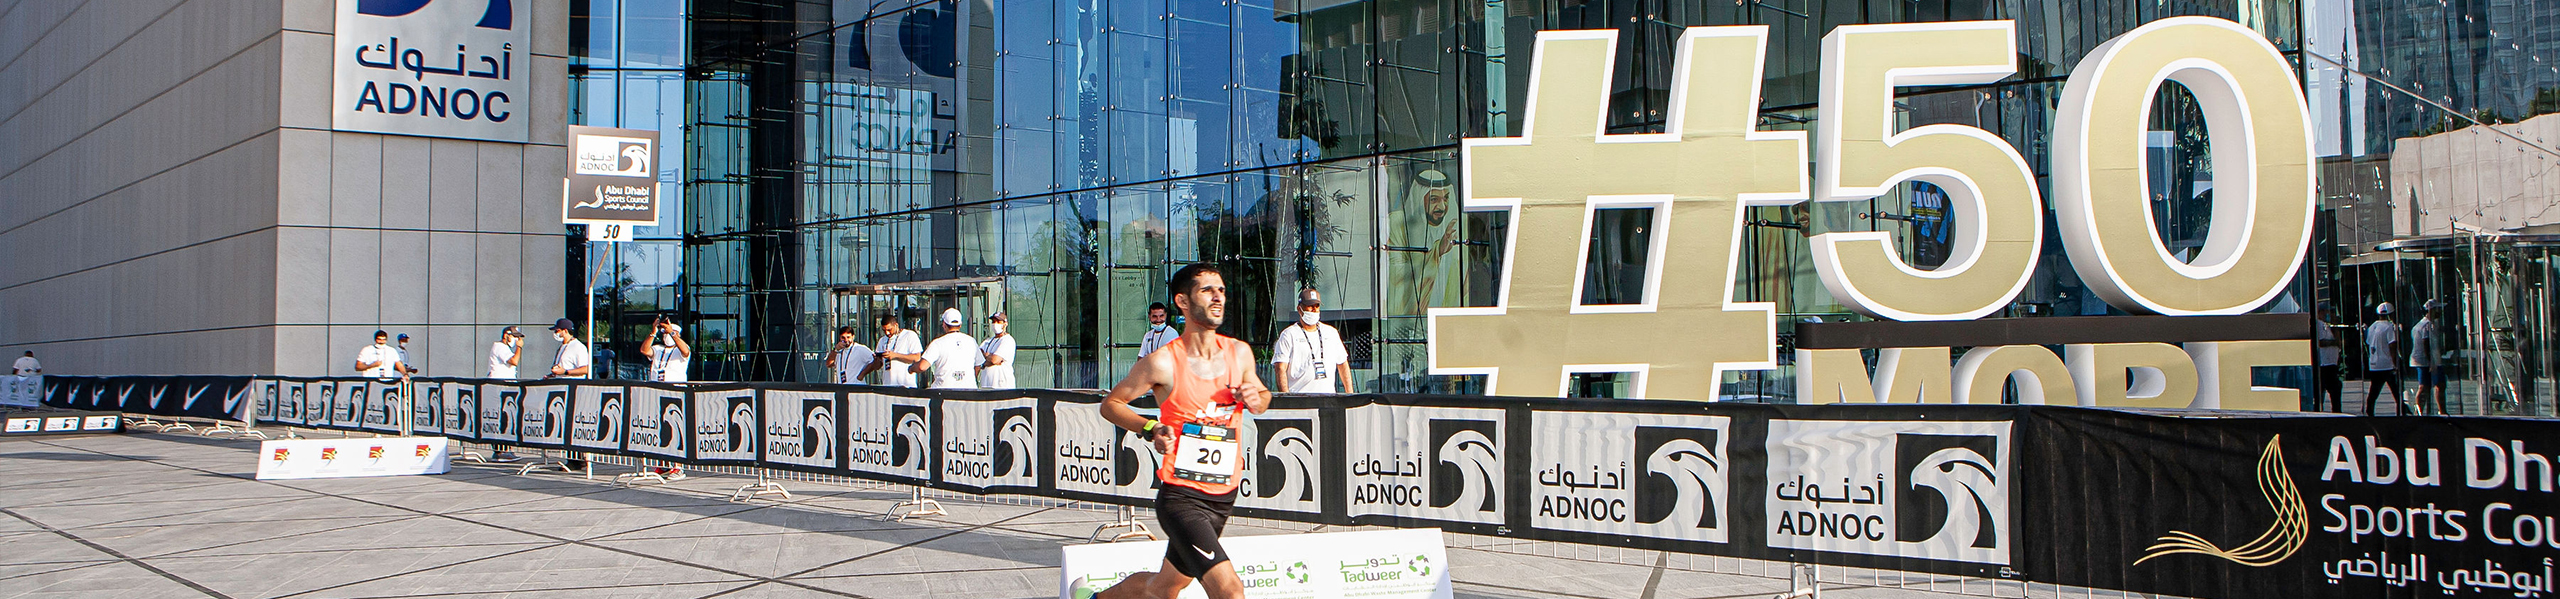 ADNOC Abu Dhabi Marathon